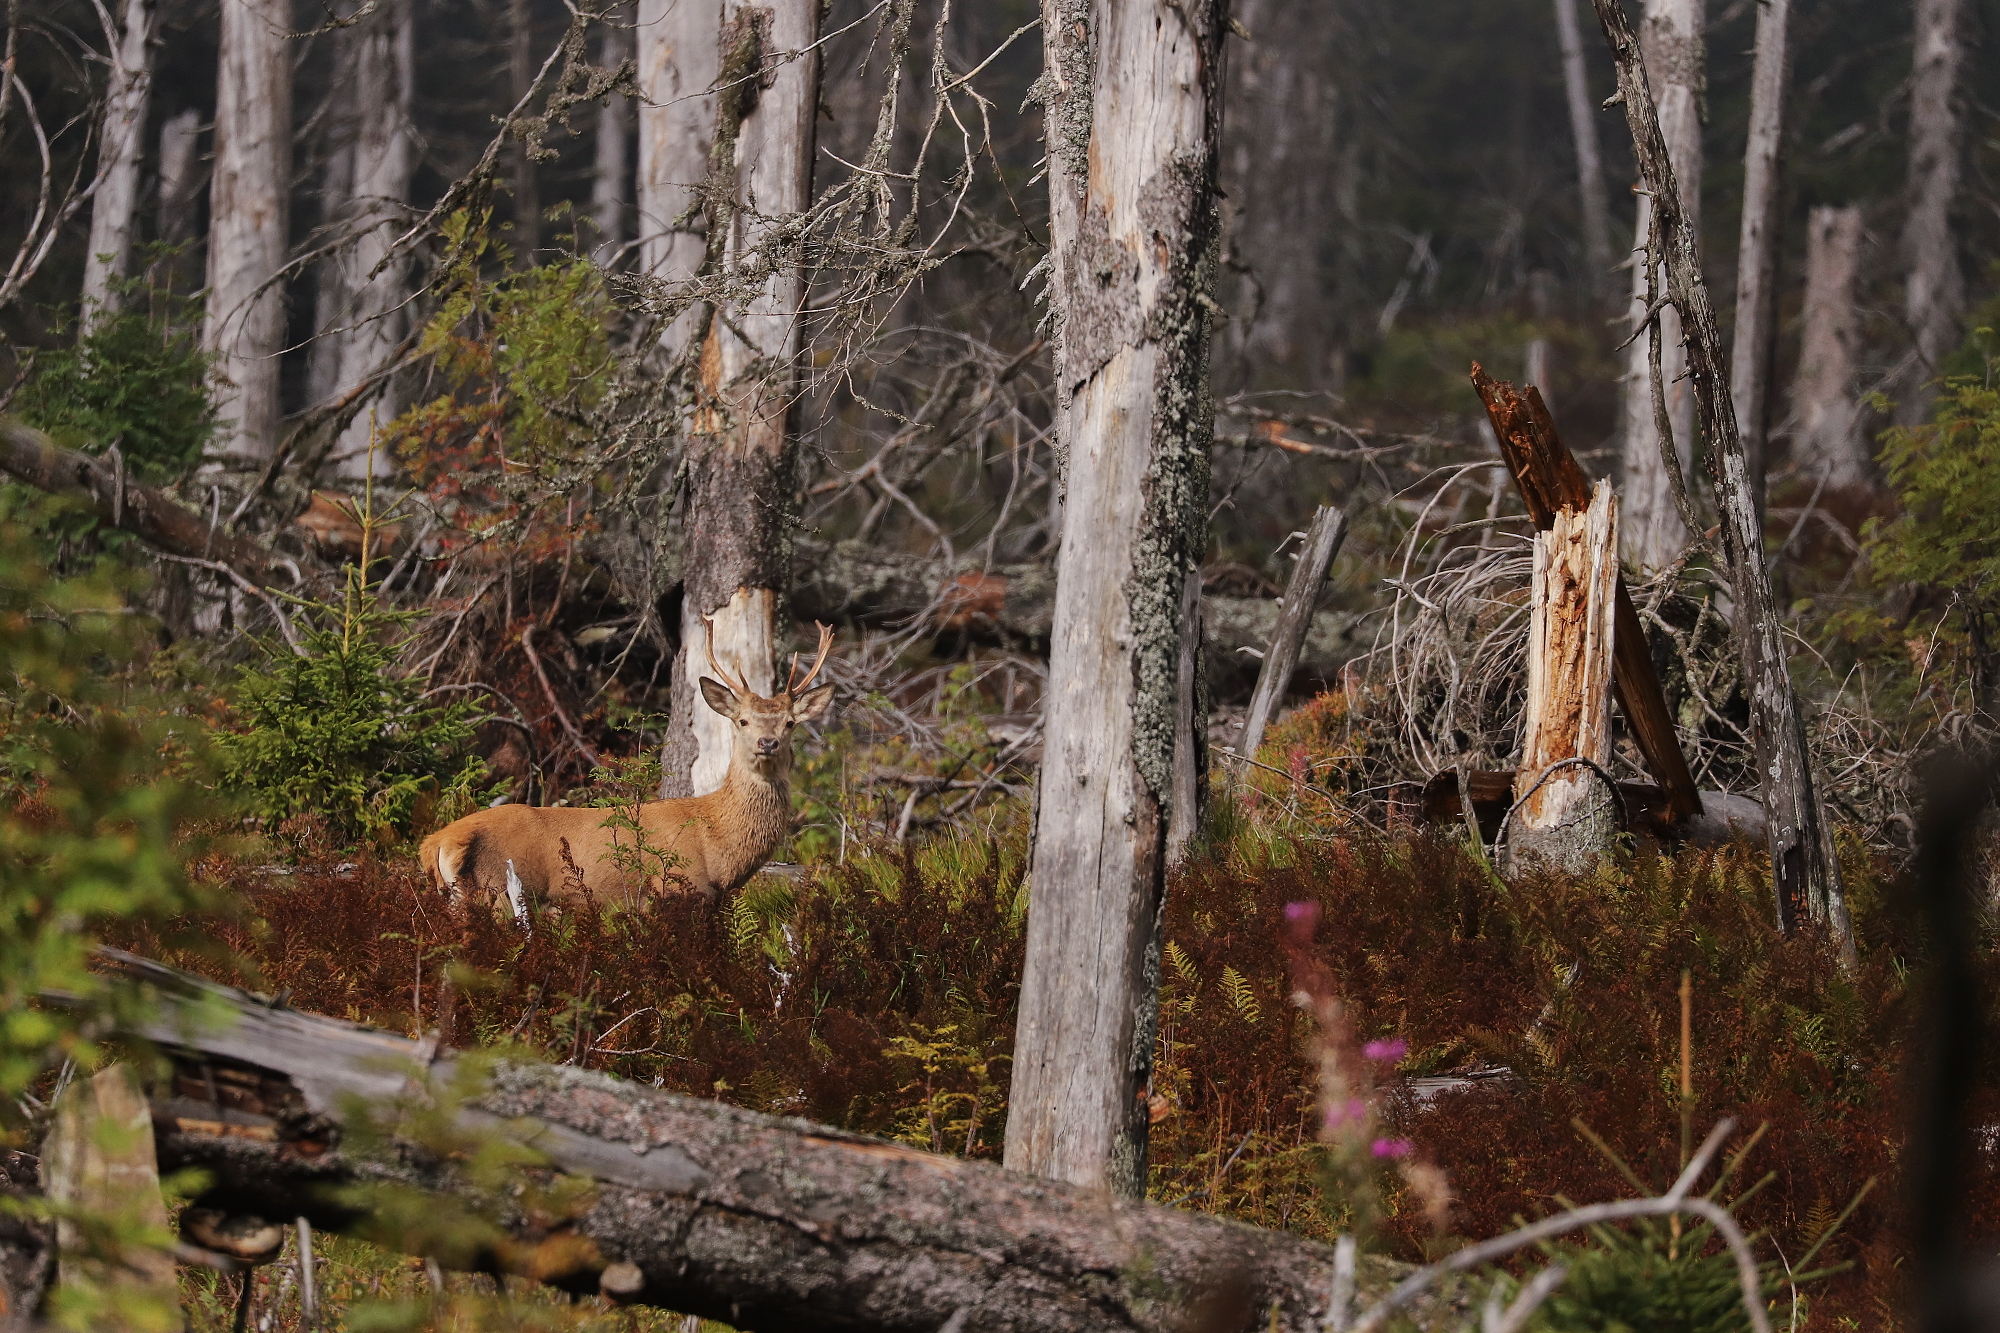 jeleň lesný (Cervus elaphus) Red deer, Slovensko Canon EOS 6d mark II + Canon 100-400 f4.5-5.6 L IS II USM, 400mm, 1/4000, f5.6, ISO 800, 23. september 2021